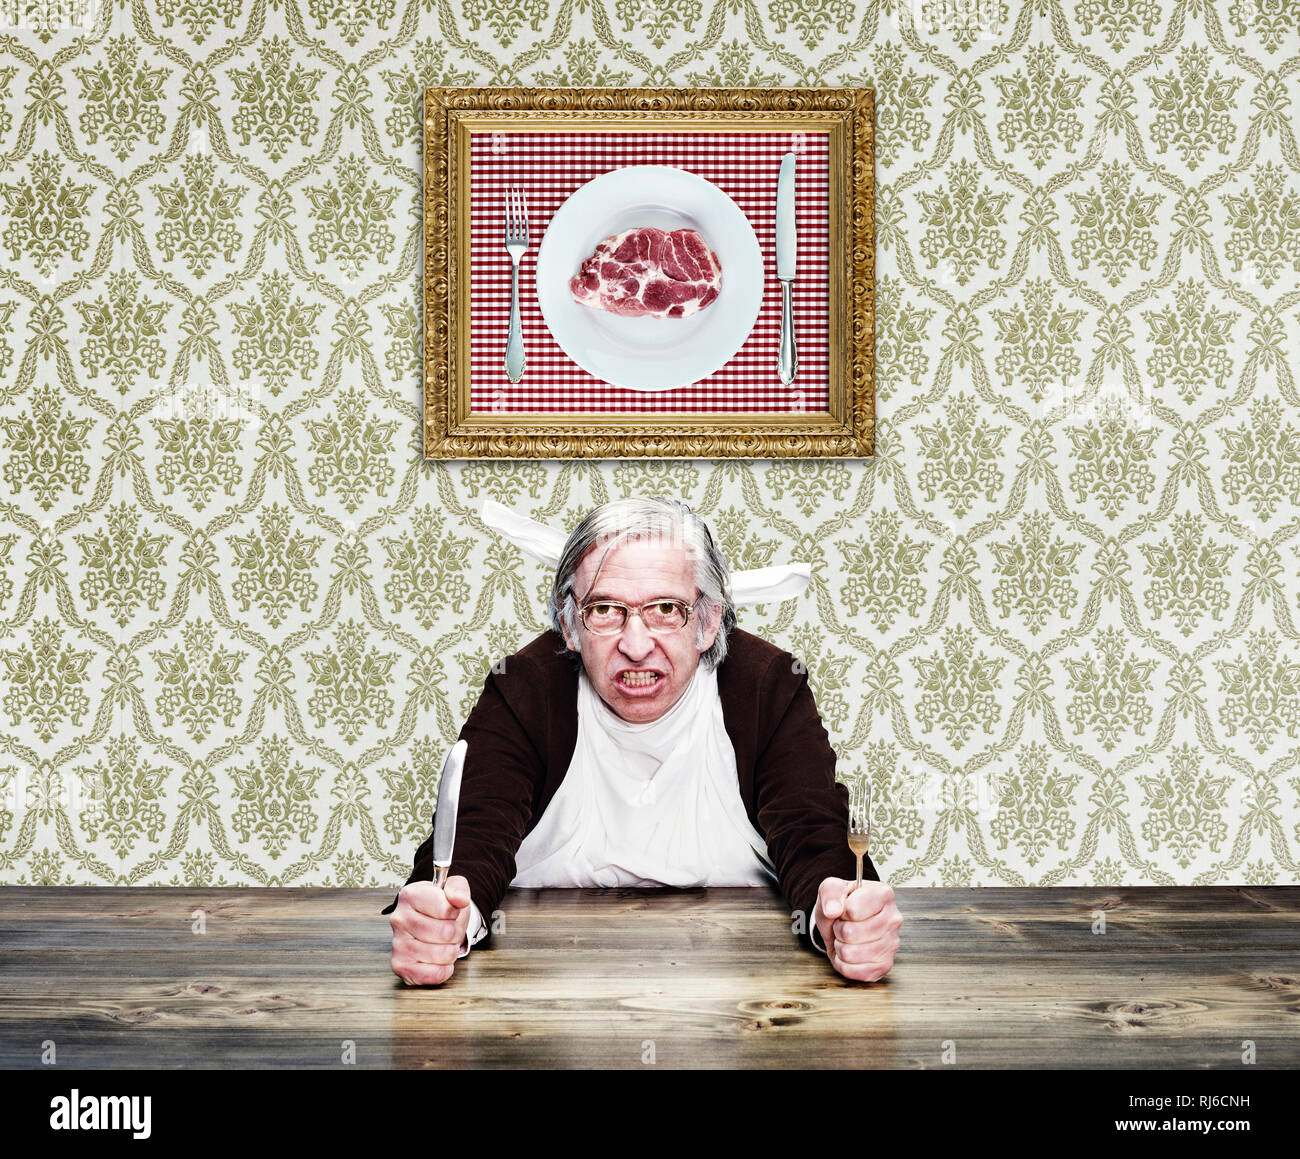 Mann mit grauem Haar und Brille am Tisch, hält Messer und Gabel in den Händen, Foto mit Fleisch an der Wand Foto Stock